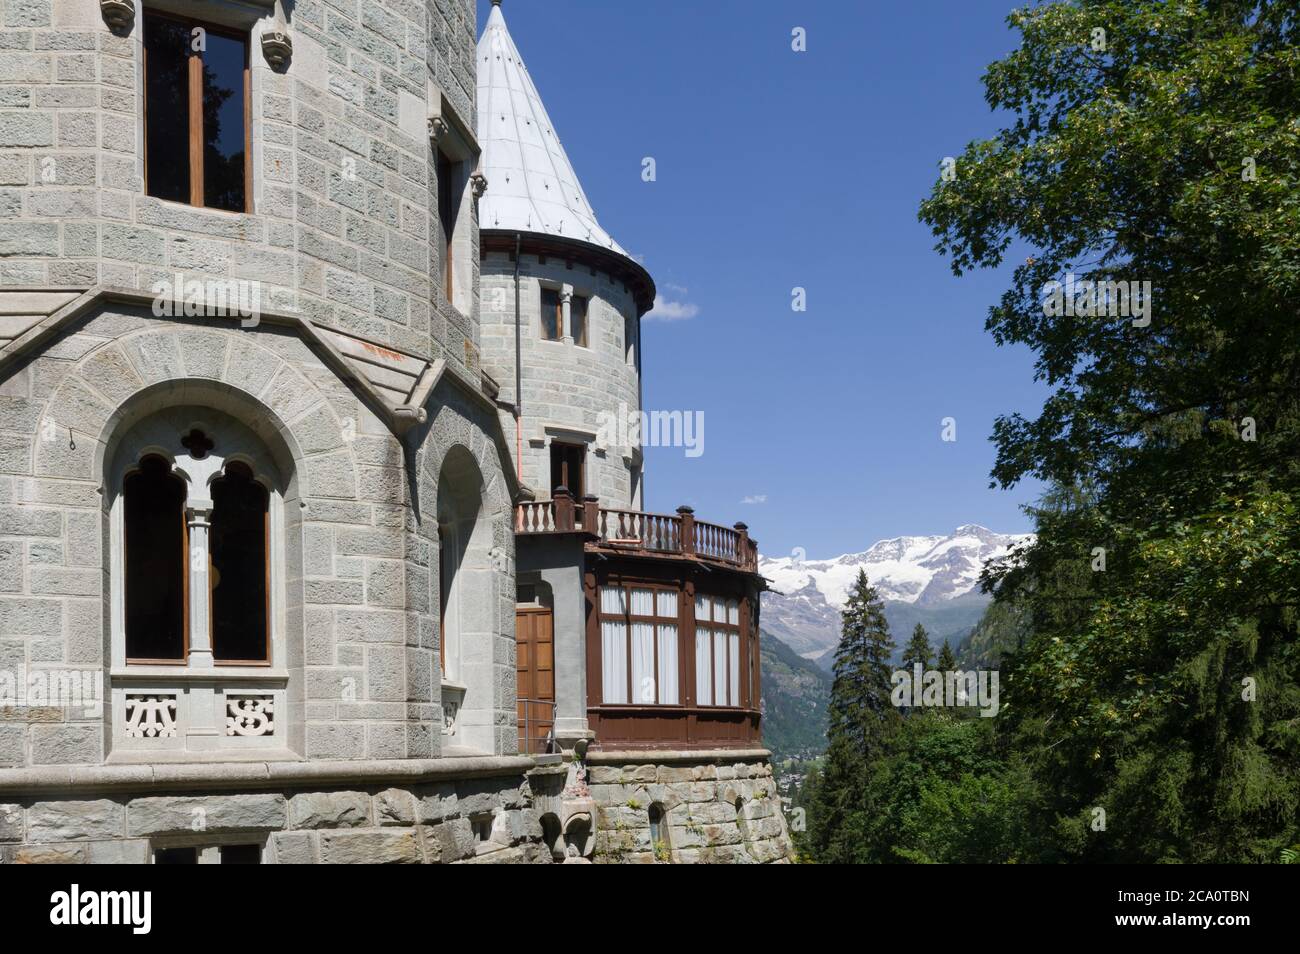 Gressoney-Saint-Jean, Italien (31. Juli 2020) - das Schloss Savoia, erbaut 1899-1904 für die italienische Königin Margherita, mit Monte Rosa im Hintergrund Stockfoto